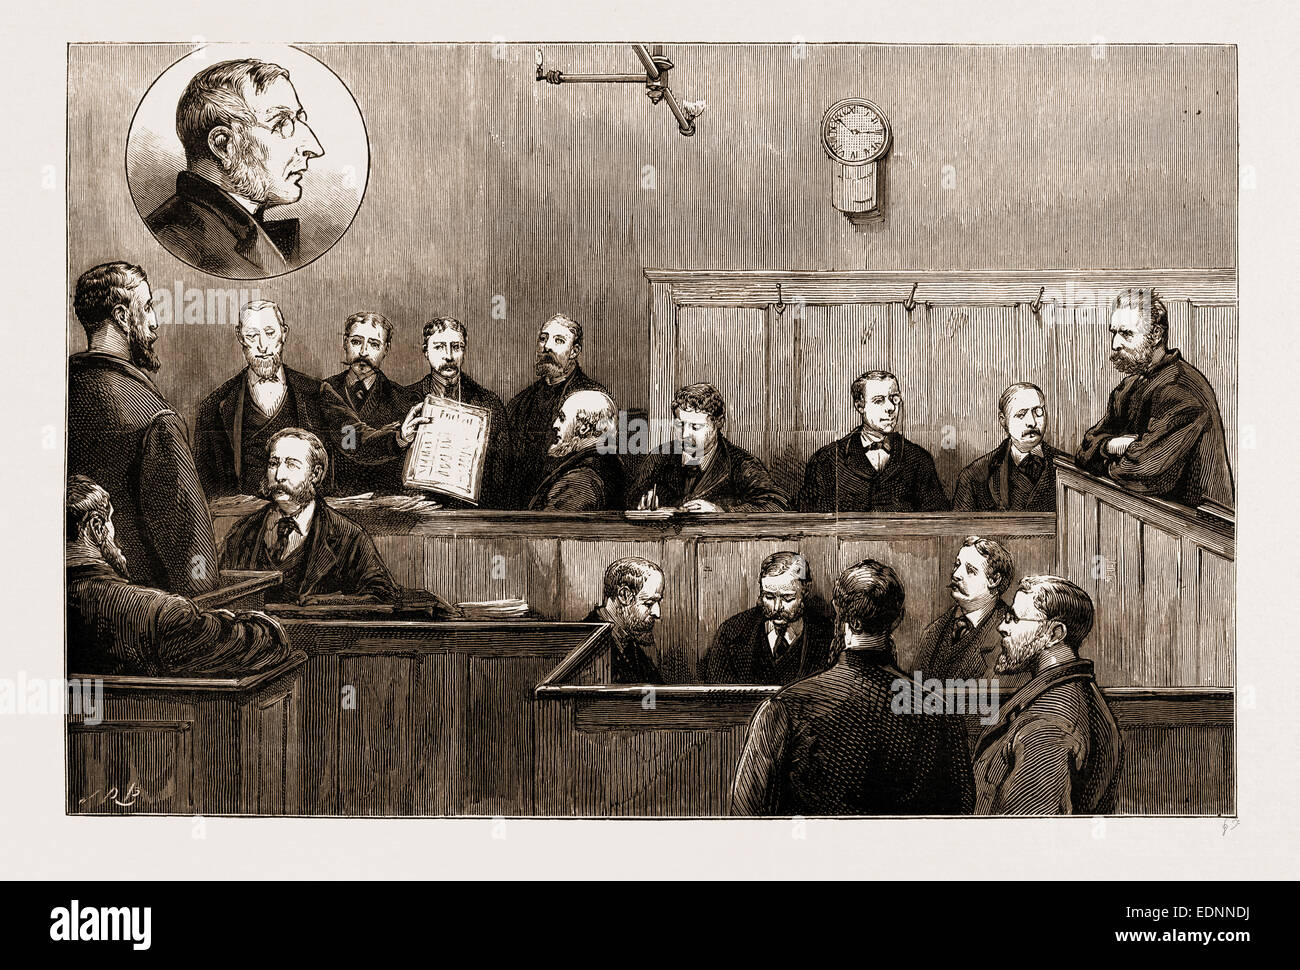 La prosecuzione della "FREIHEIT": ESAME DI HERR JOHANN la maggior parte presso la vecchia strada di prua Tribunale di polizia, LONDRA, REGNO UNITO, 1881 Foto Stock